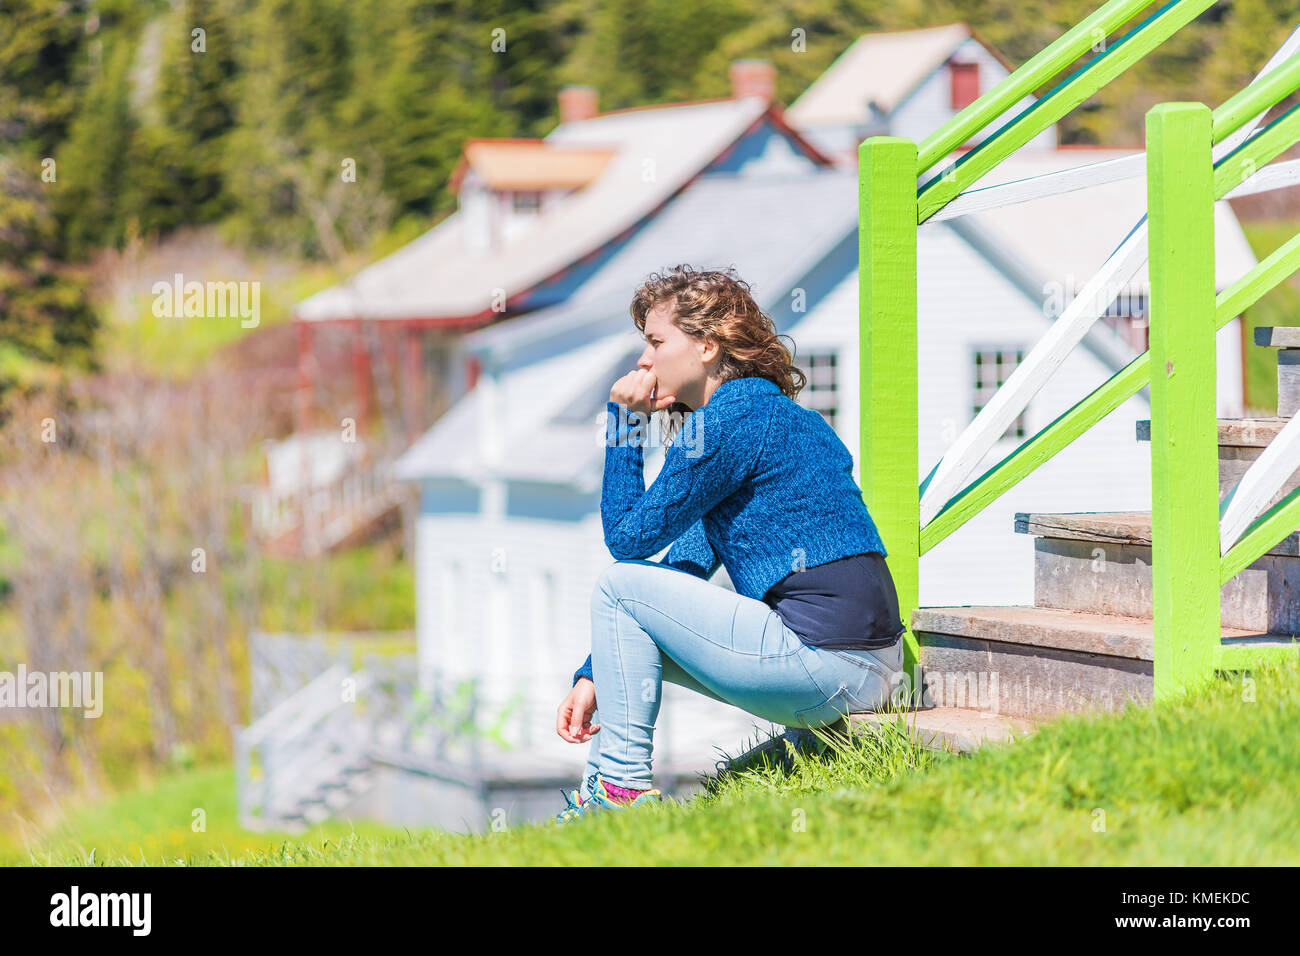 Junge Frau auf der Veranda der bunt bemalten Haus in idyllischer Landschaft Sommer Landschaft in Skandinavien und Kanada sitzen mit der Hand auf das Gesicht denken Stockfoto